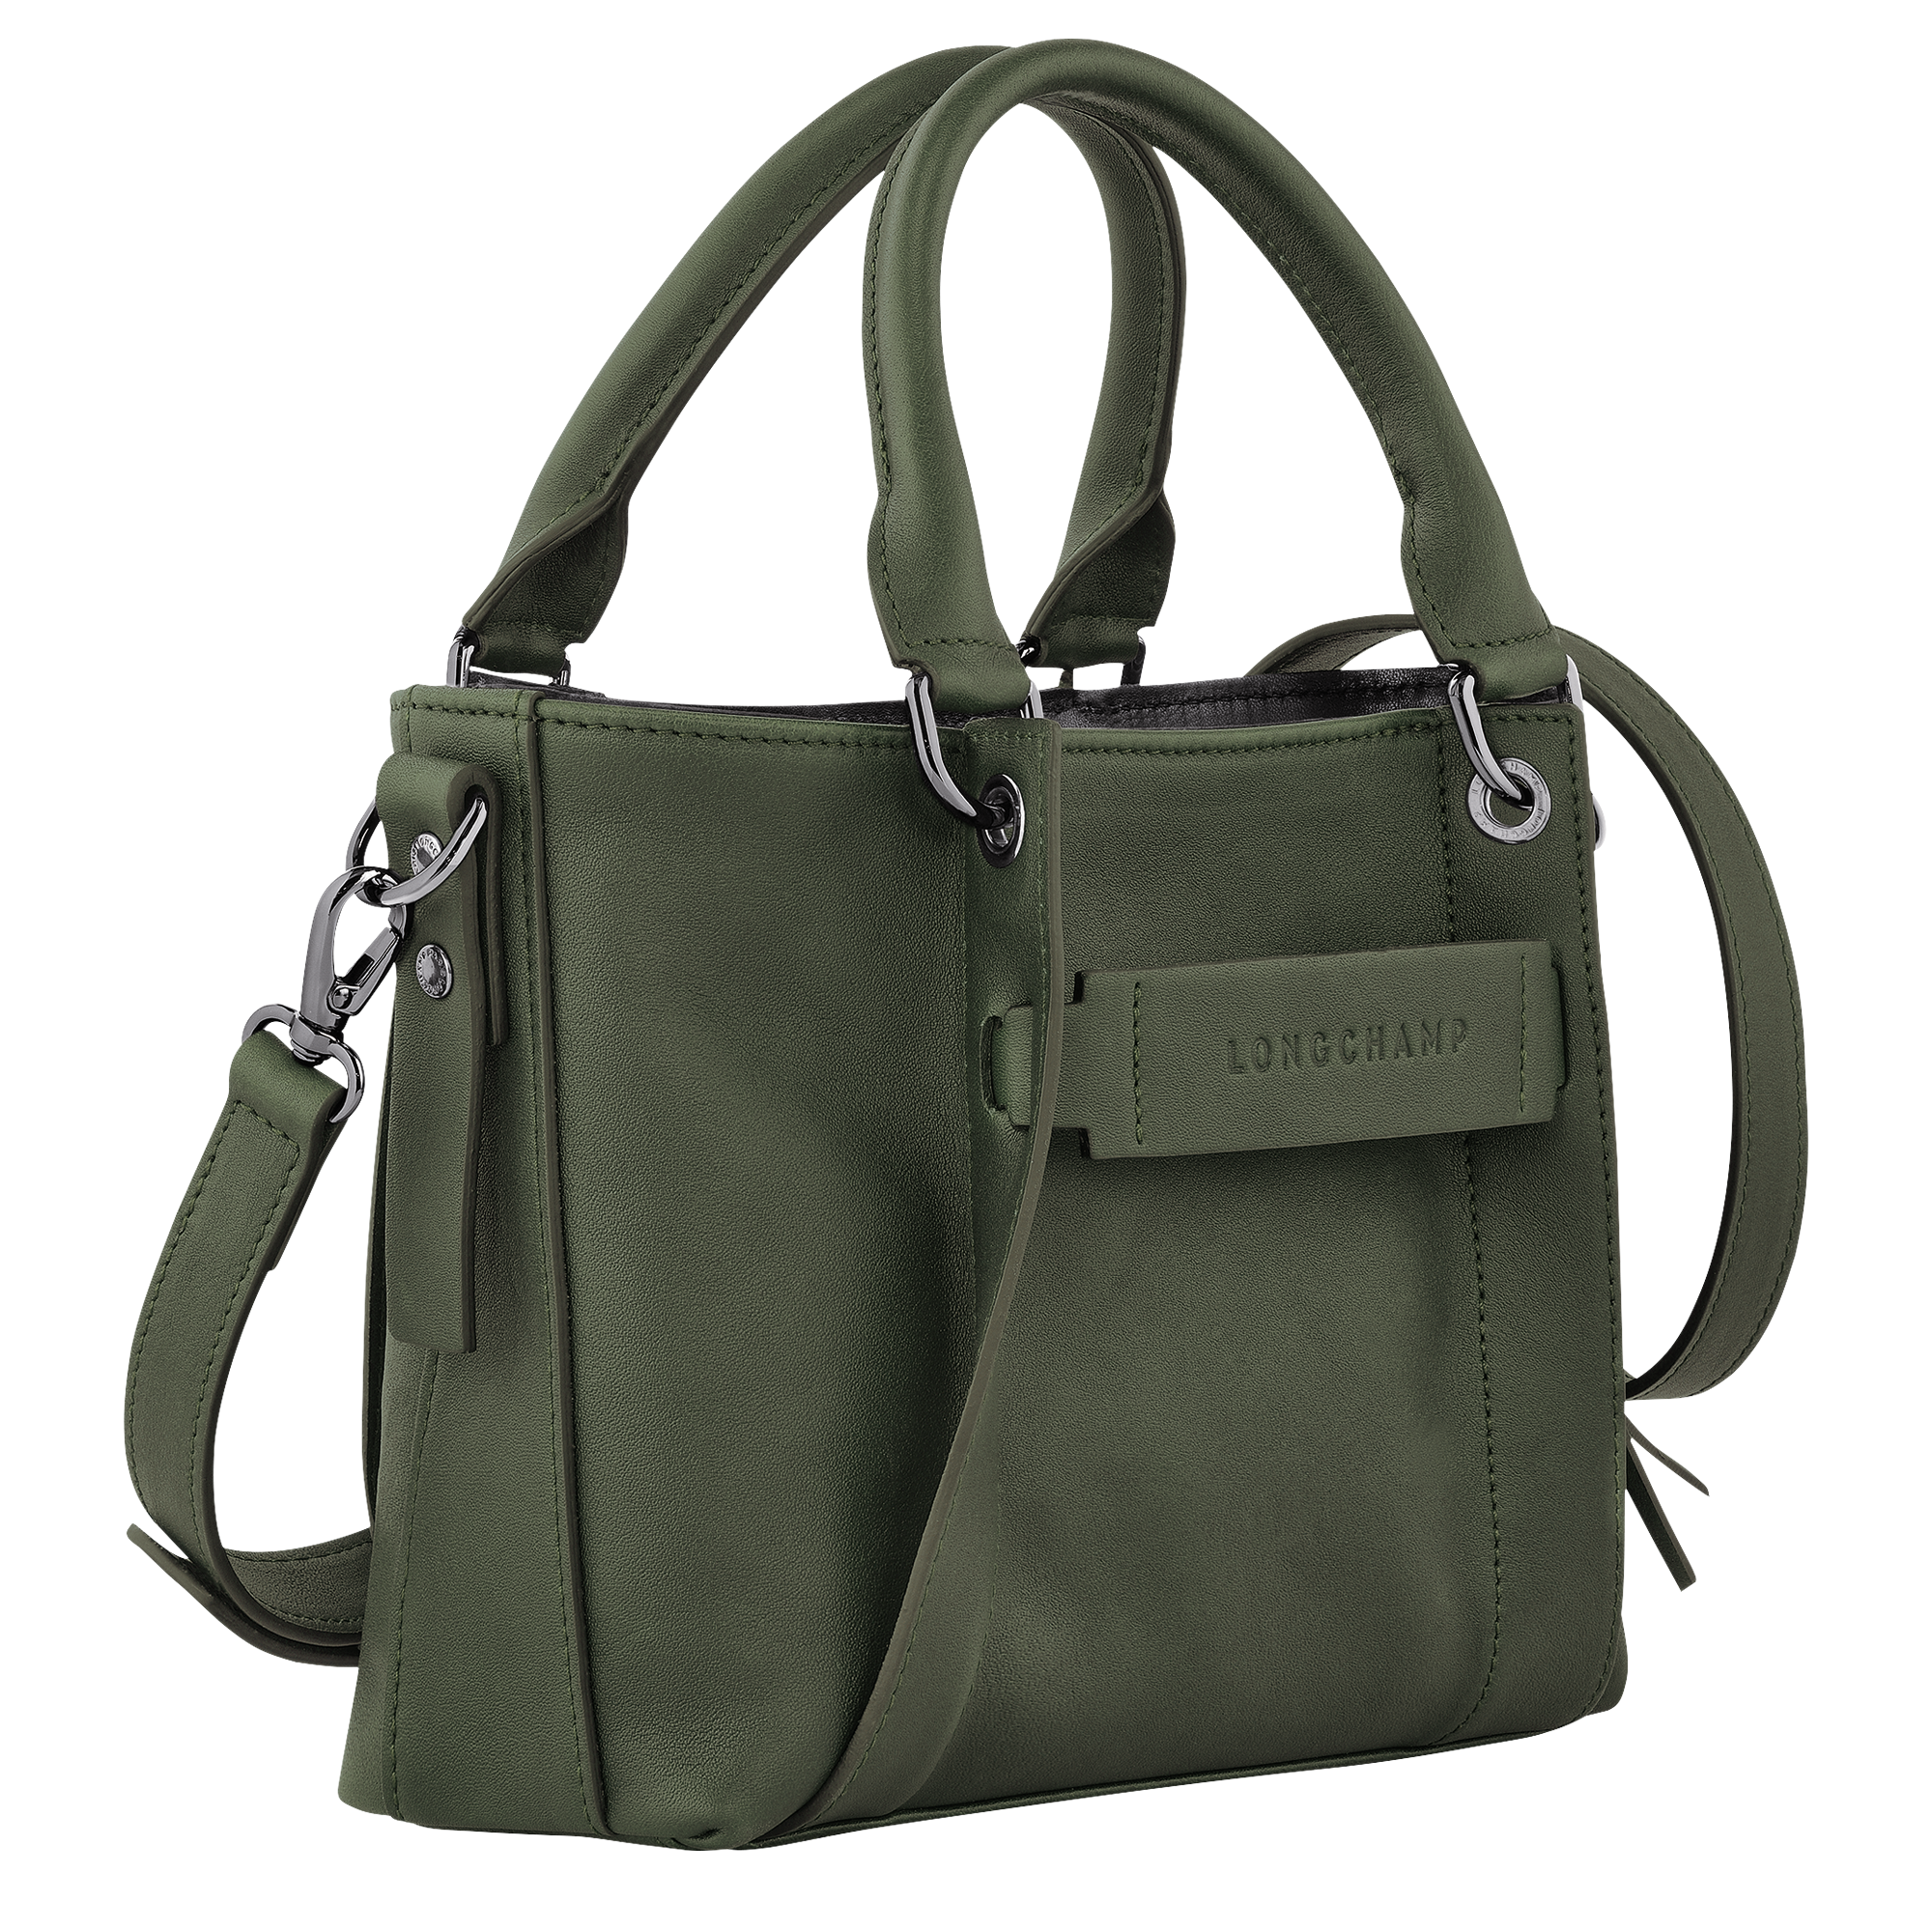 Longchamp 3D Handbag S